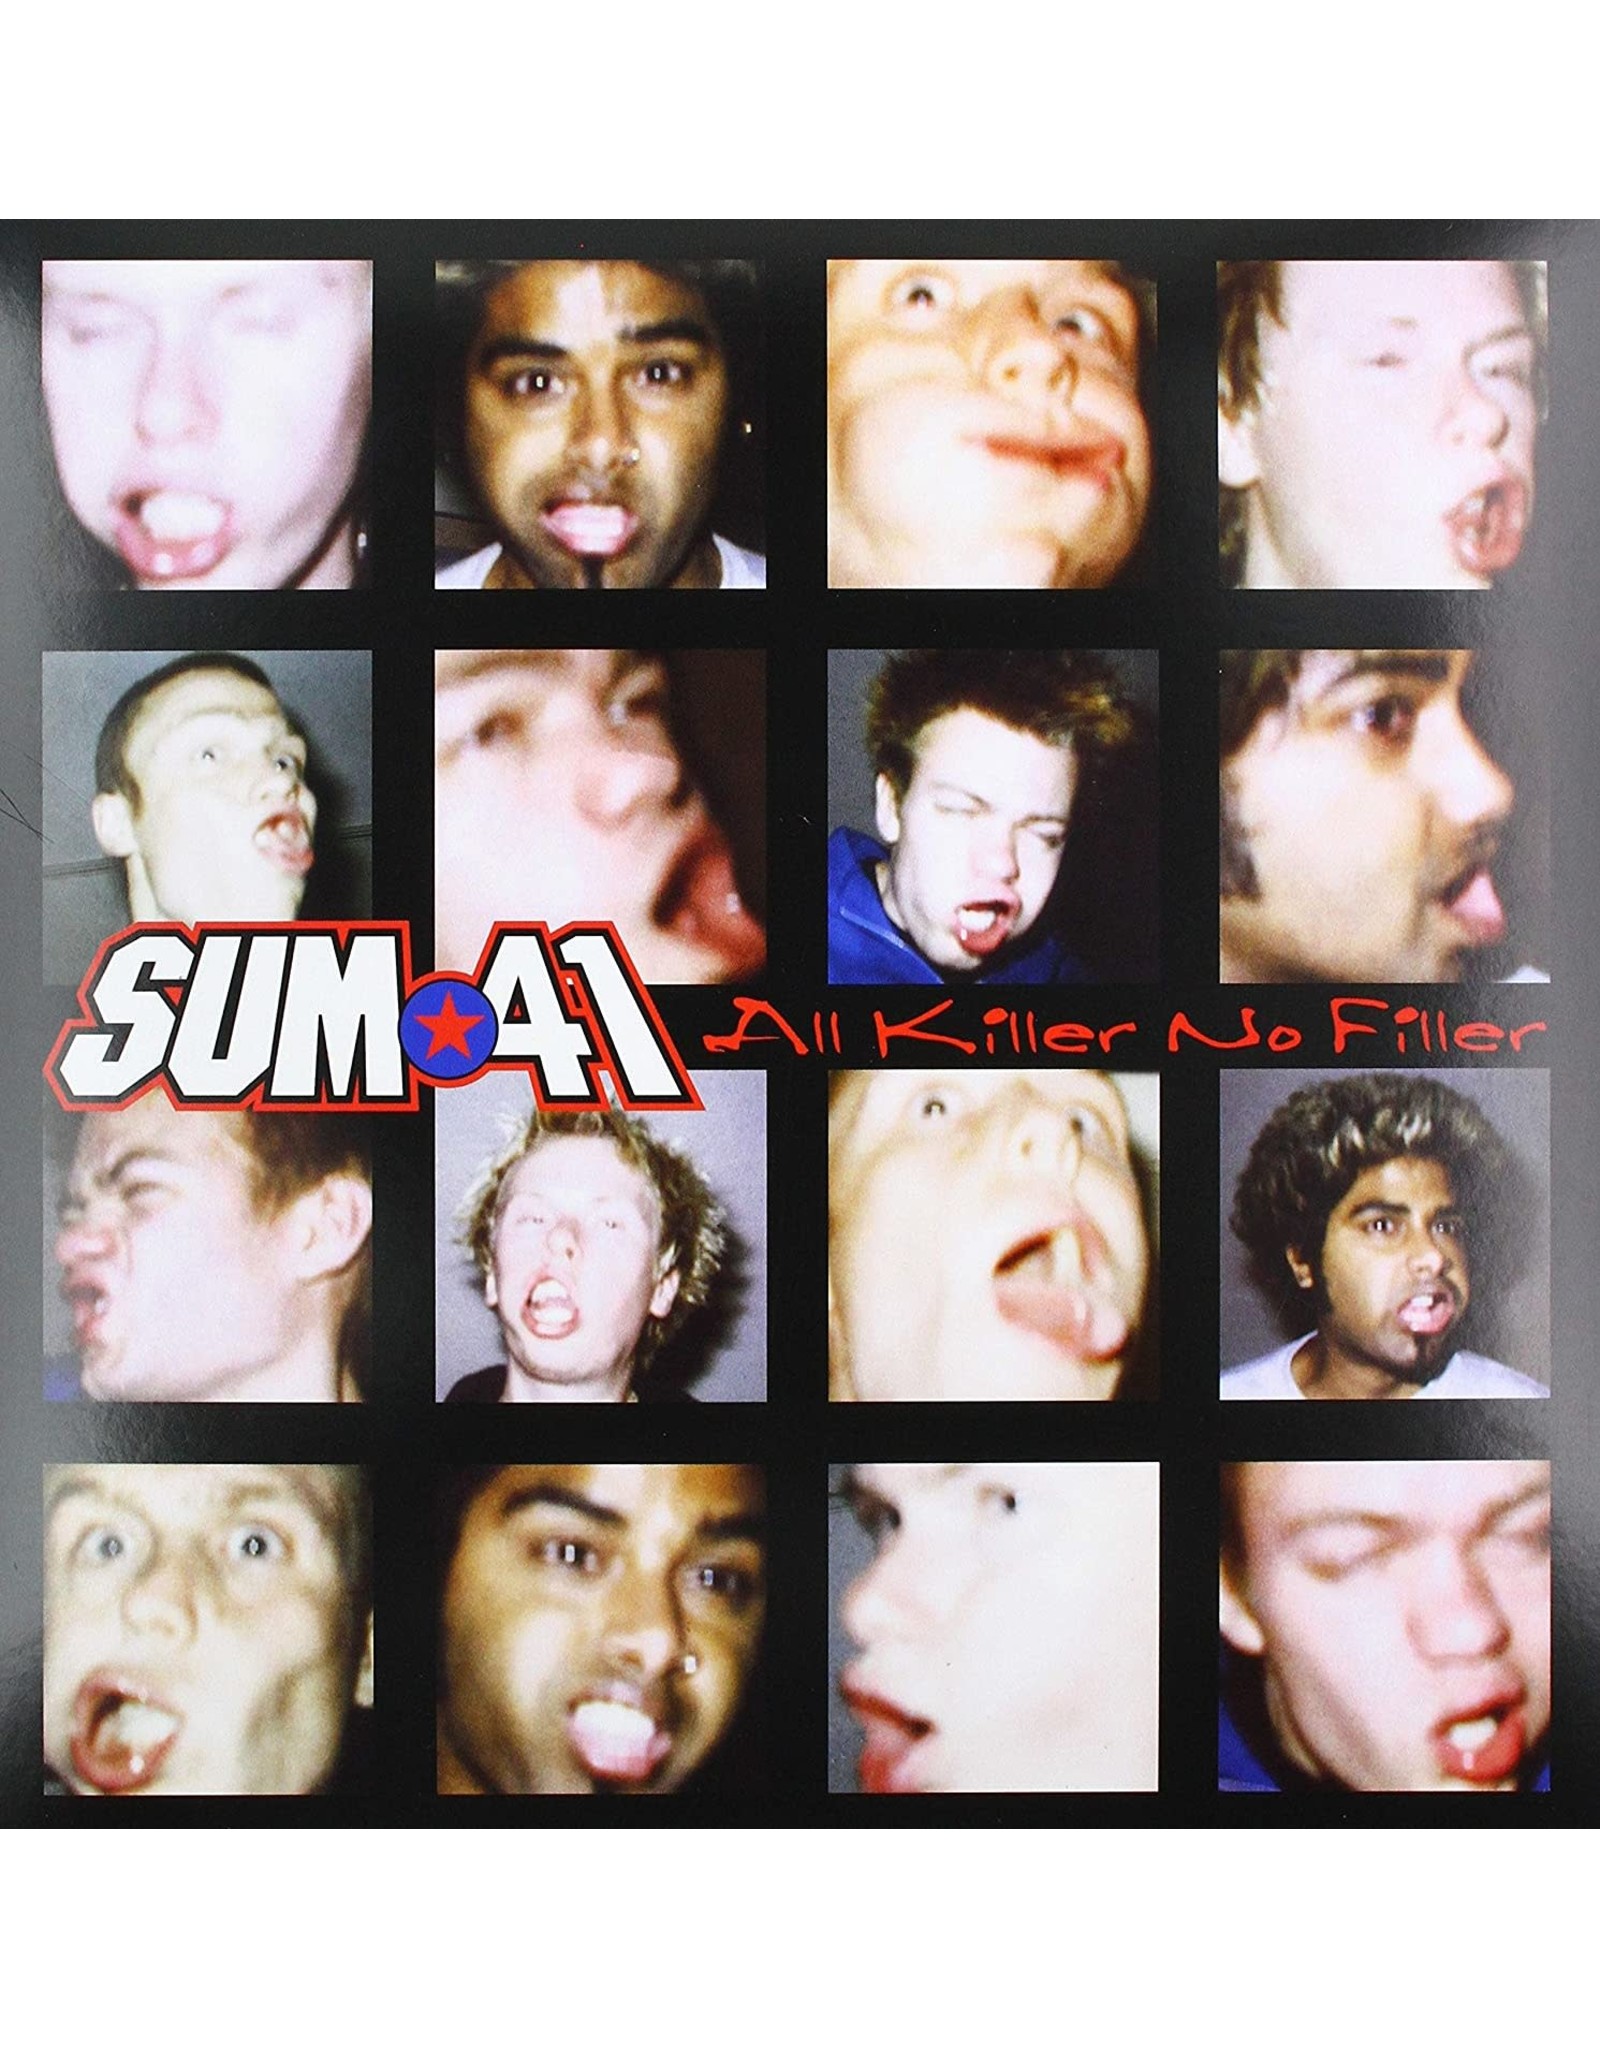 SUM 41 - All Killer No Filler (20th Anniversary)